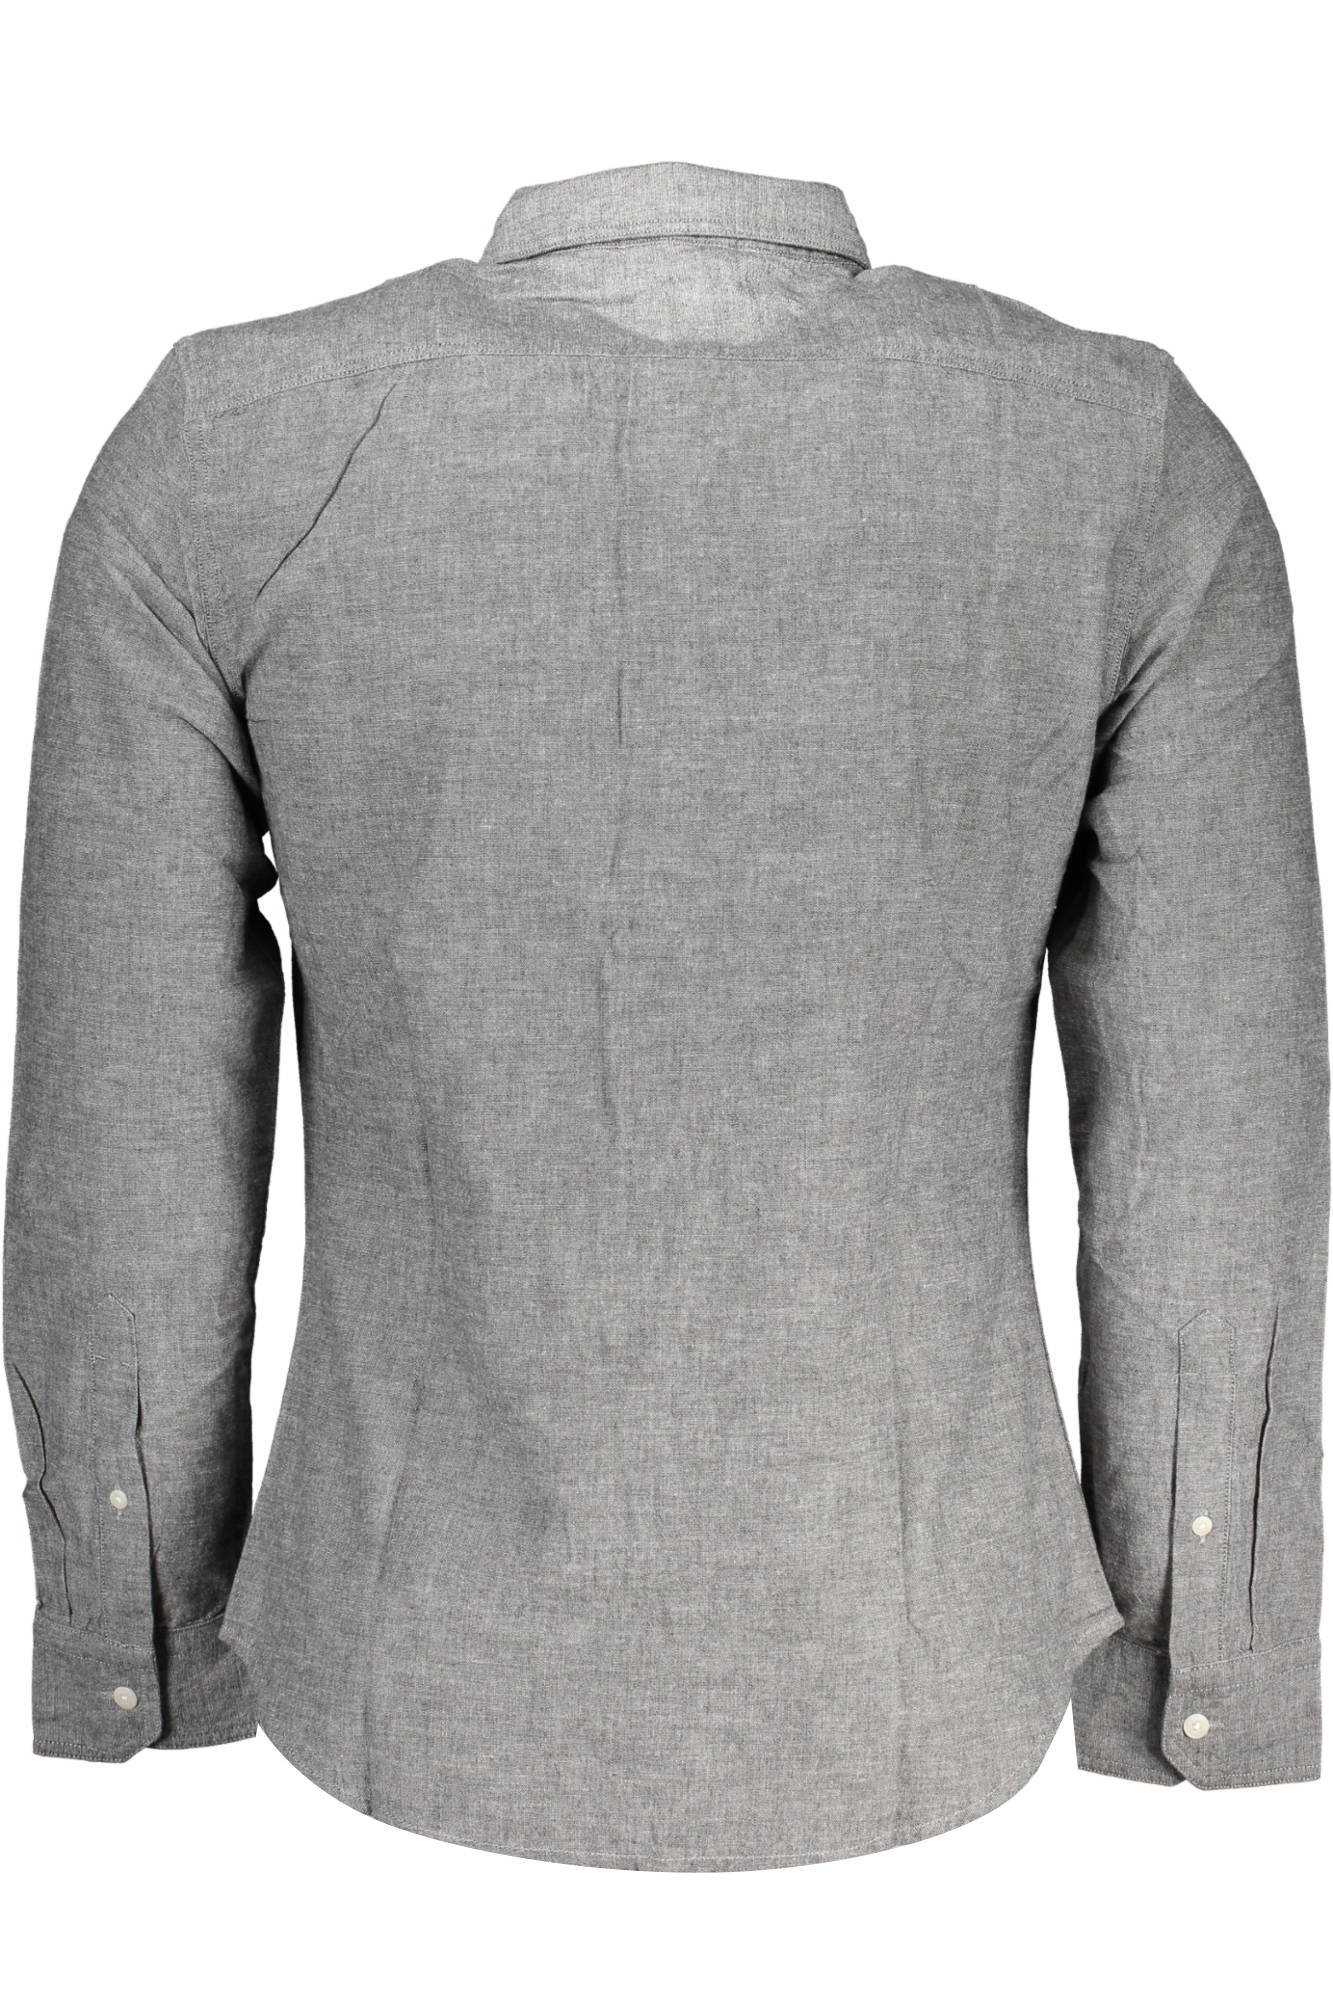 Levi's Gray Shirt - Fizigo